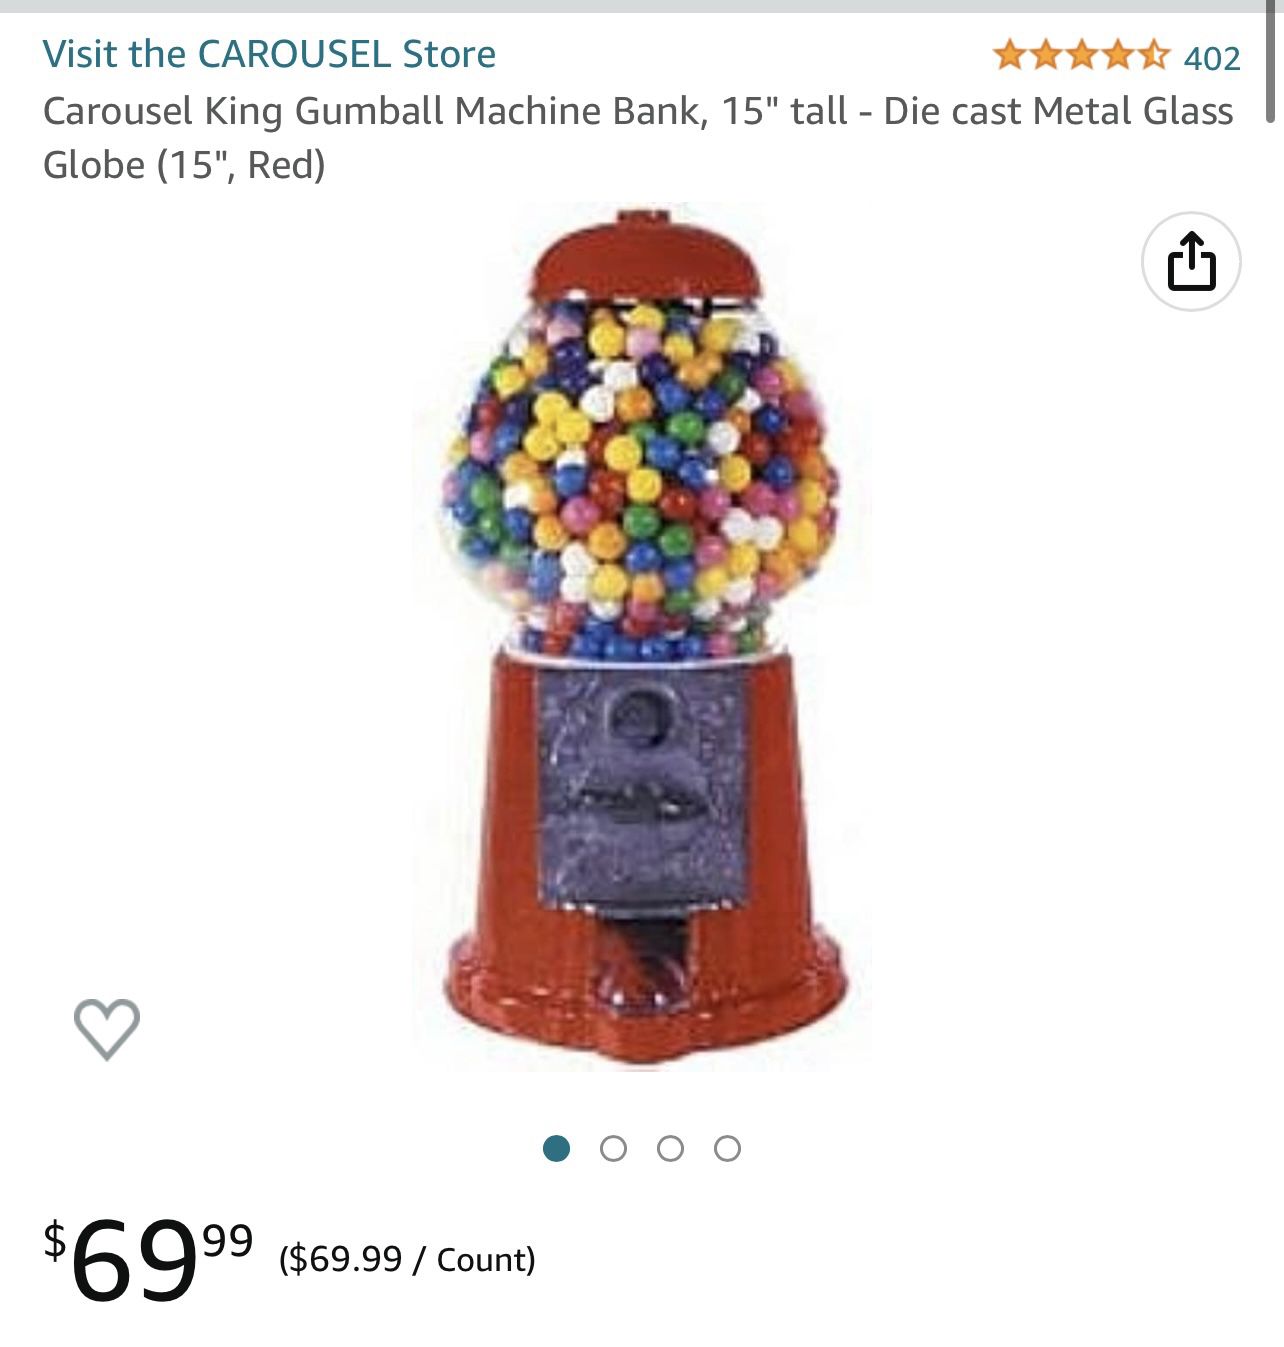 Carousel King Gum ball Machine Bank 15” Tall